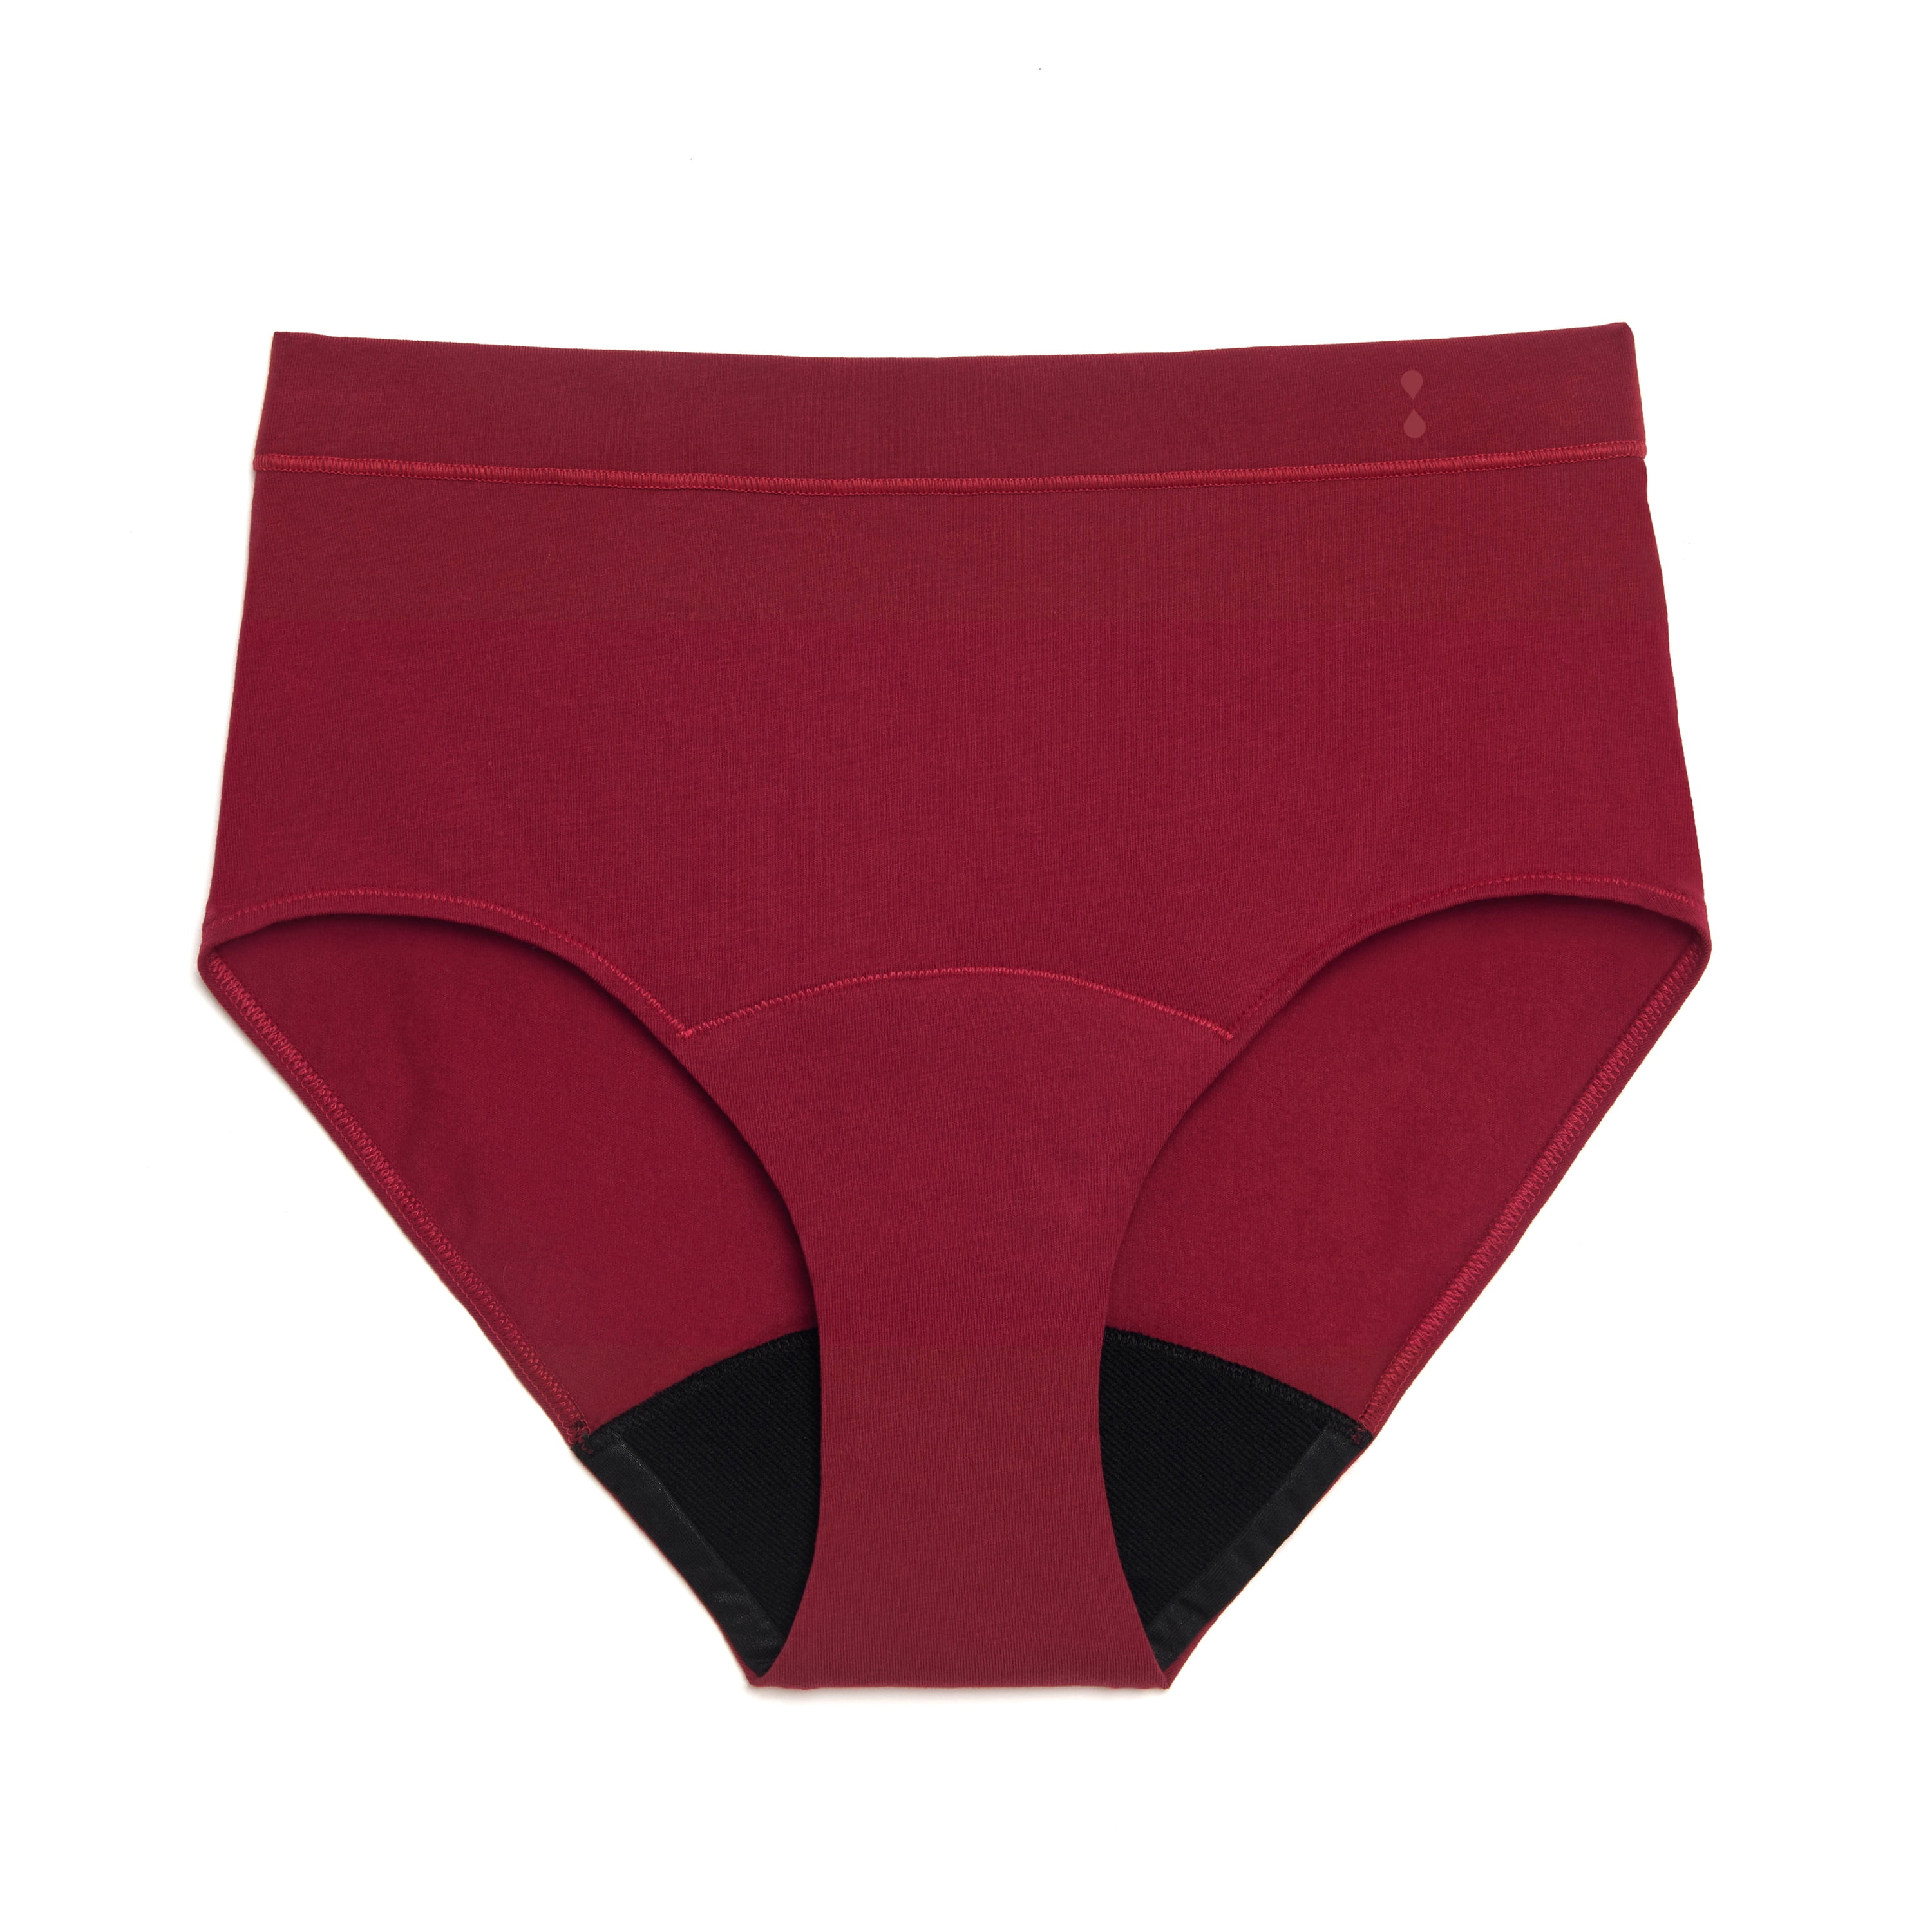 Thinx for All™ Women's Hi-Waist Period Underwear, Super